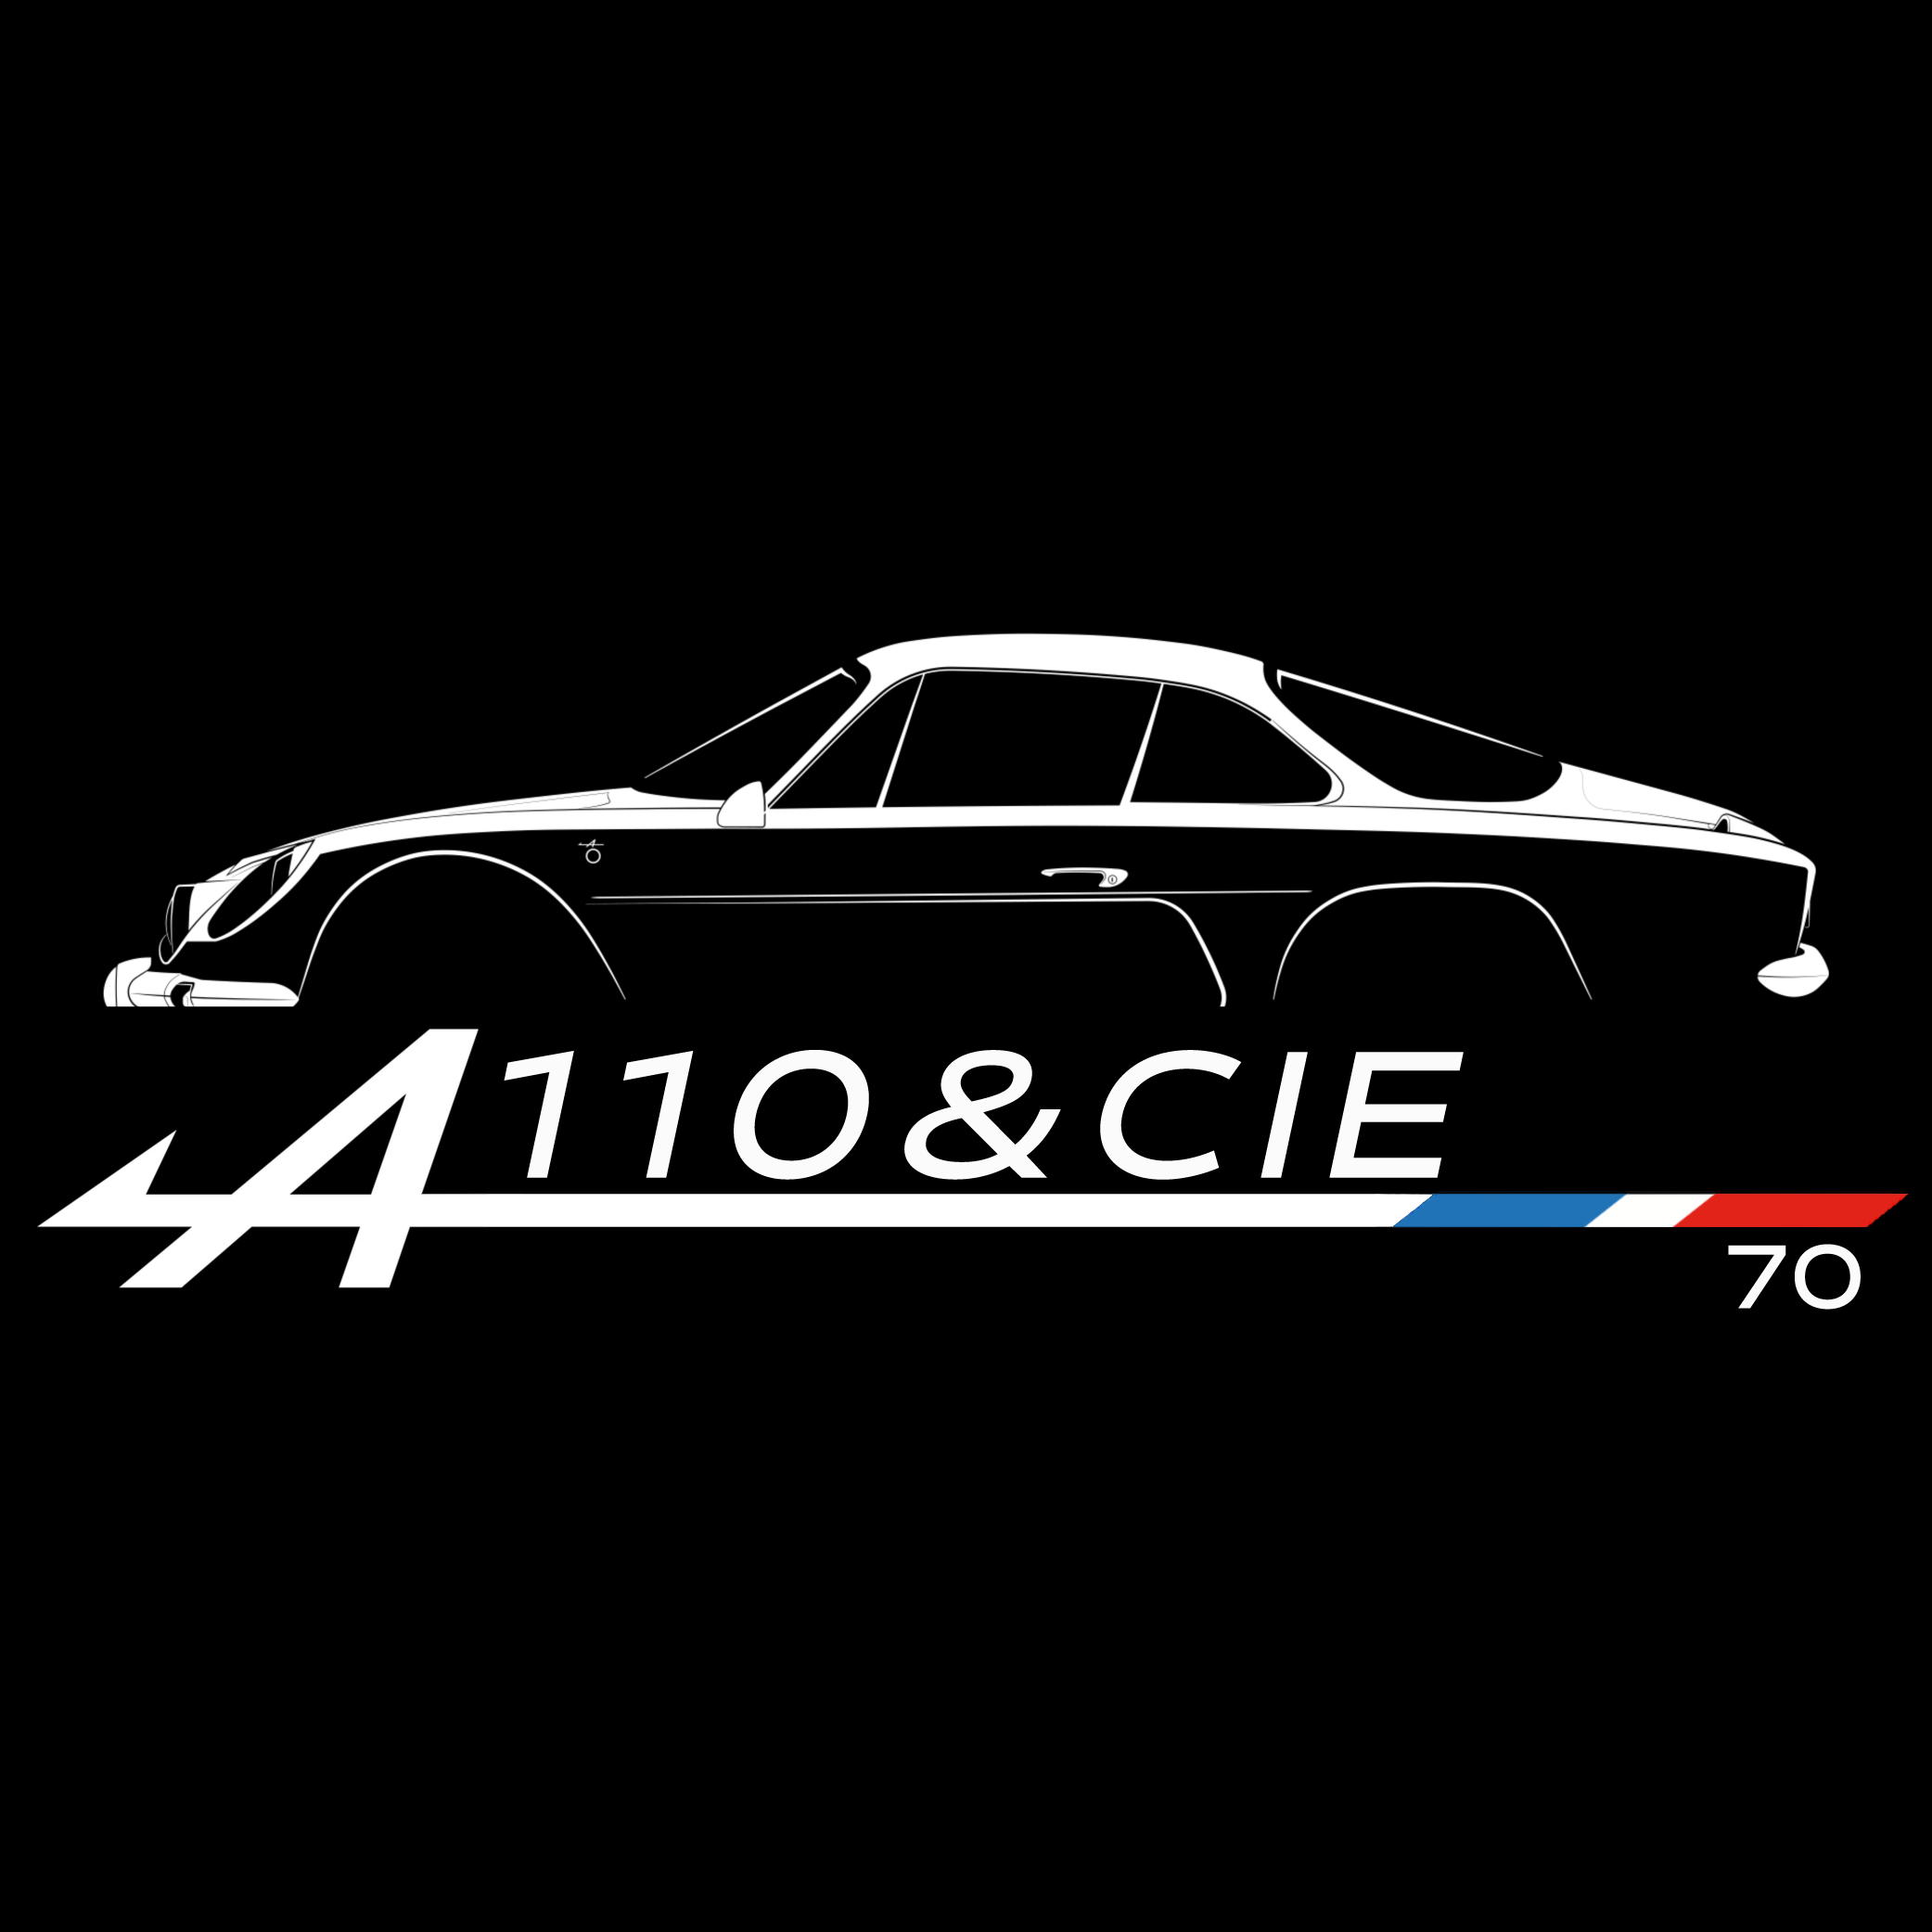 A110&Cie